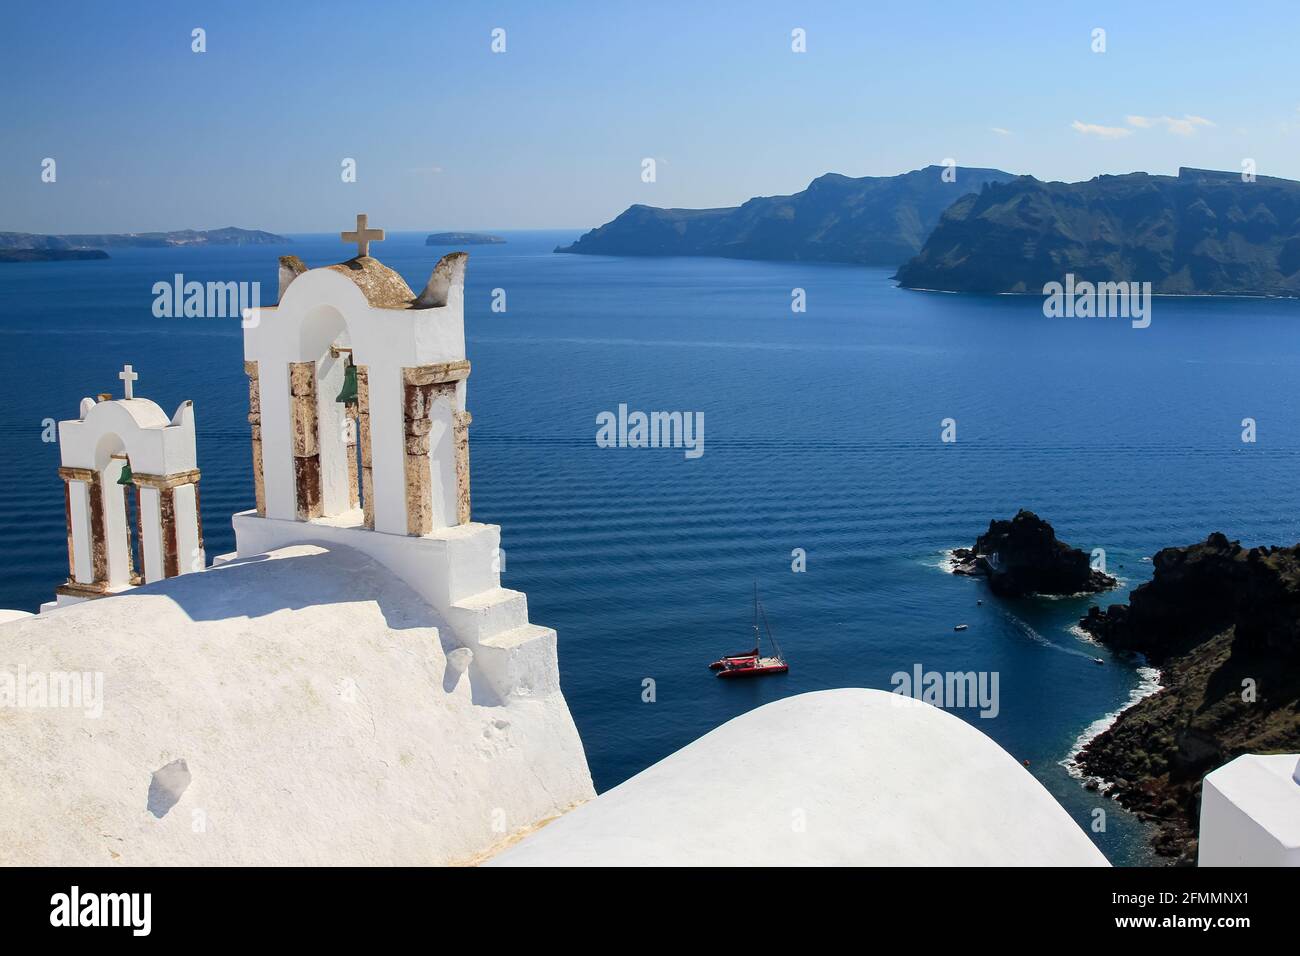 Clocher de l'église grecque traditionnelle contre la mer bleue et le ciel, Oia, Santorini, Grèce Banque D'Images